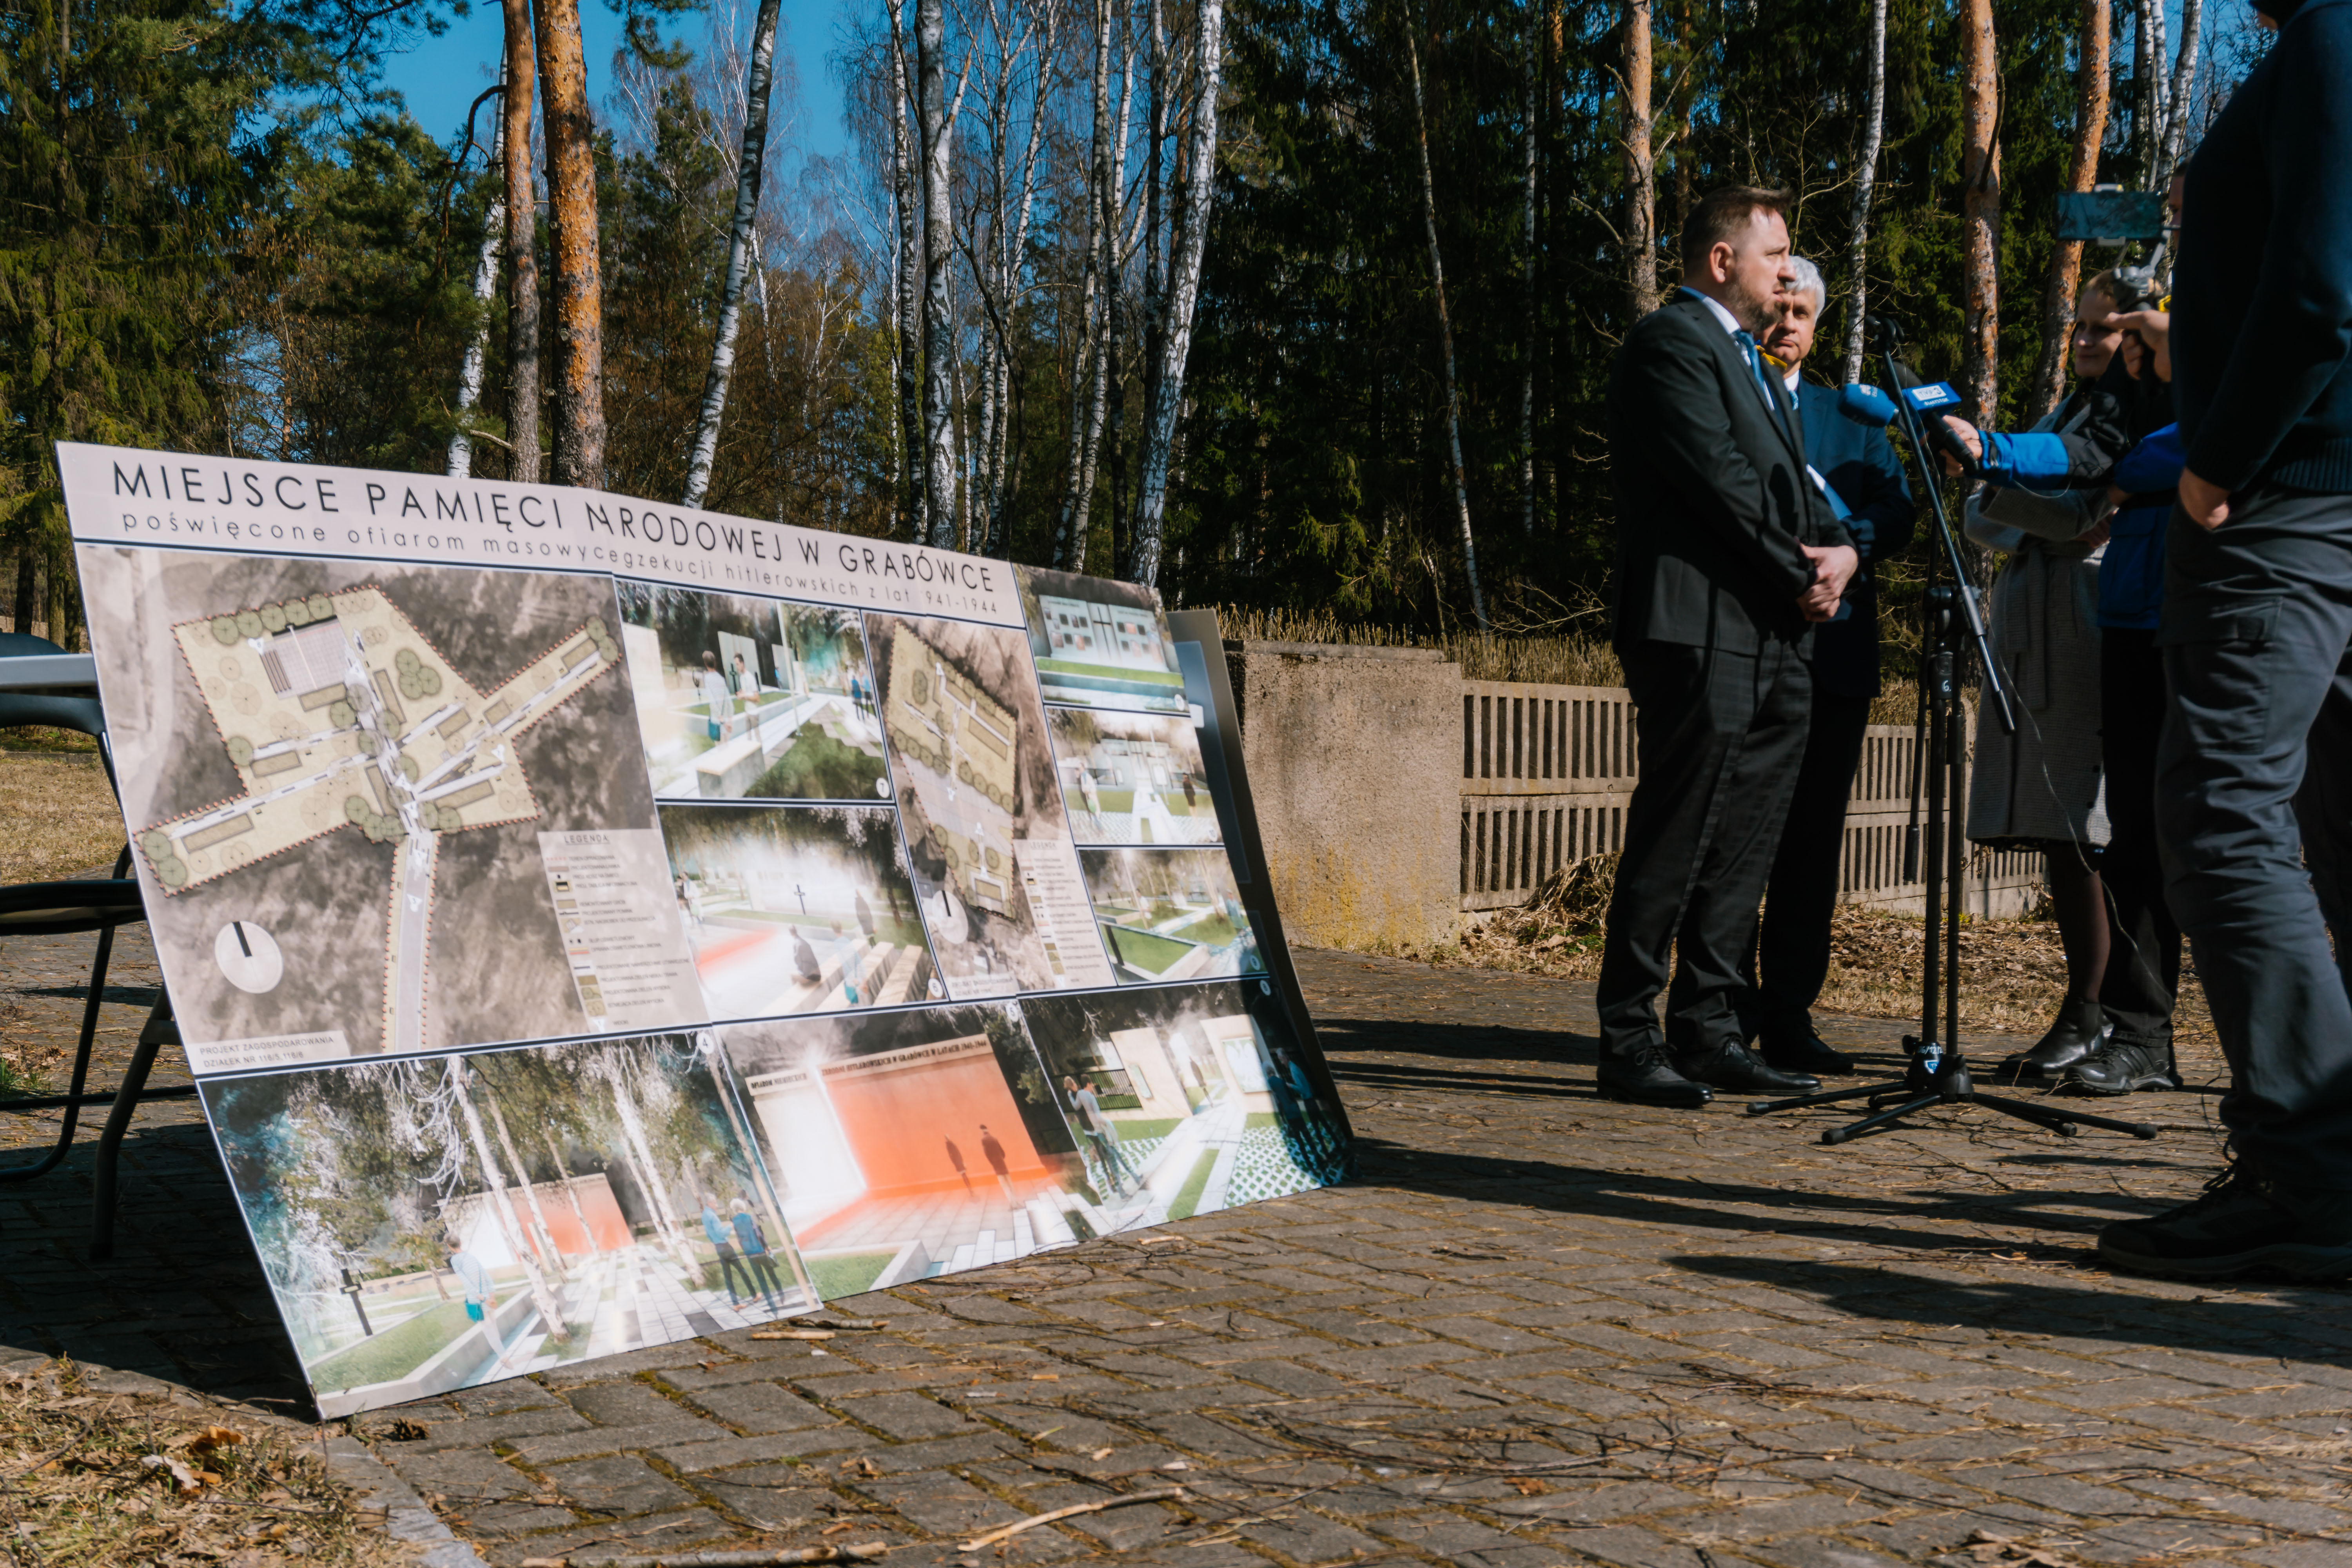 Plansze z wizualizacjeami nowego cmentarza w Grabówce